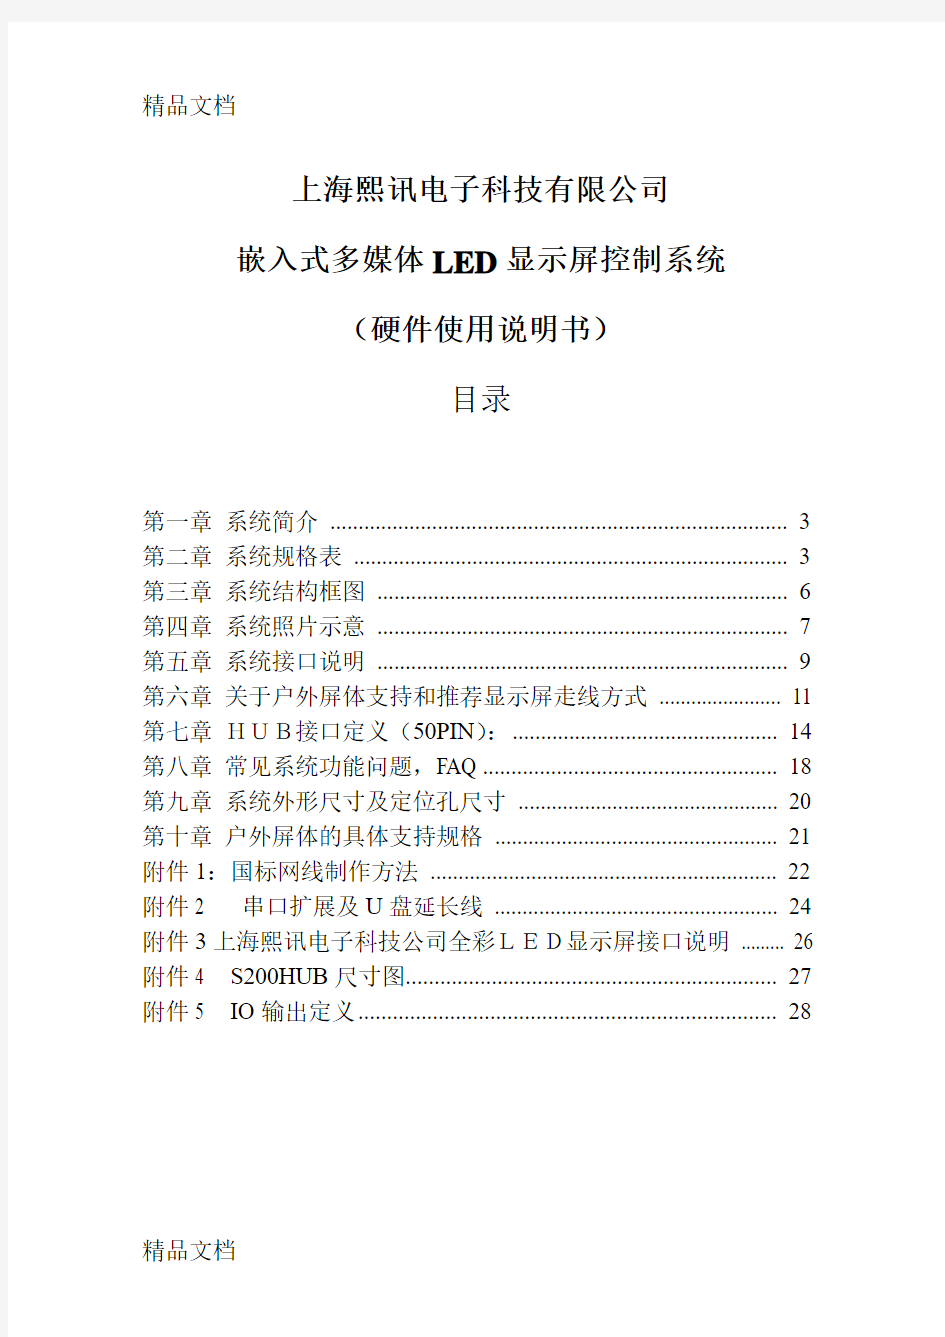 上海熙讯嵌入式LED显示屏控制系统说明书-080329教学内容